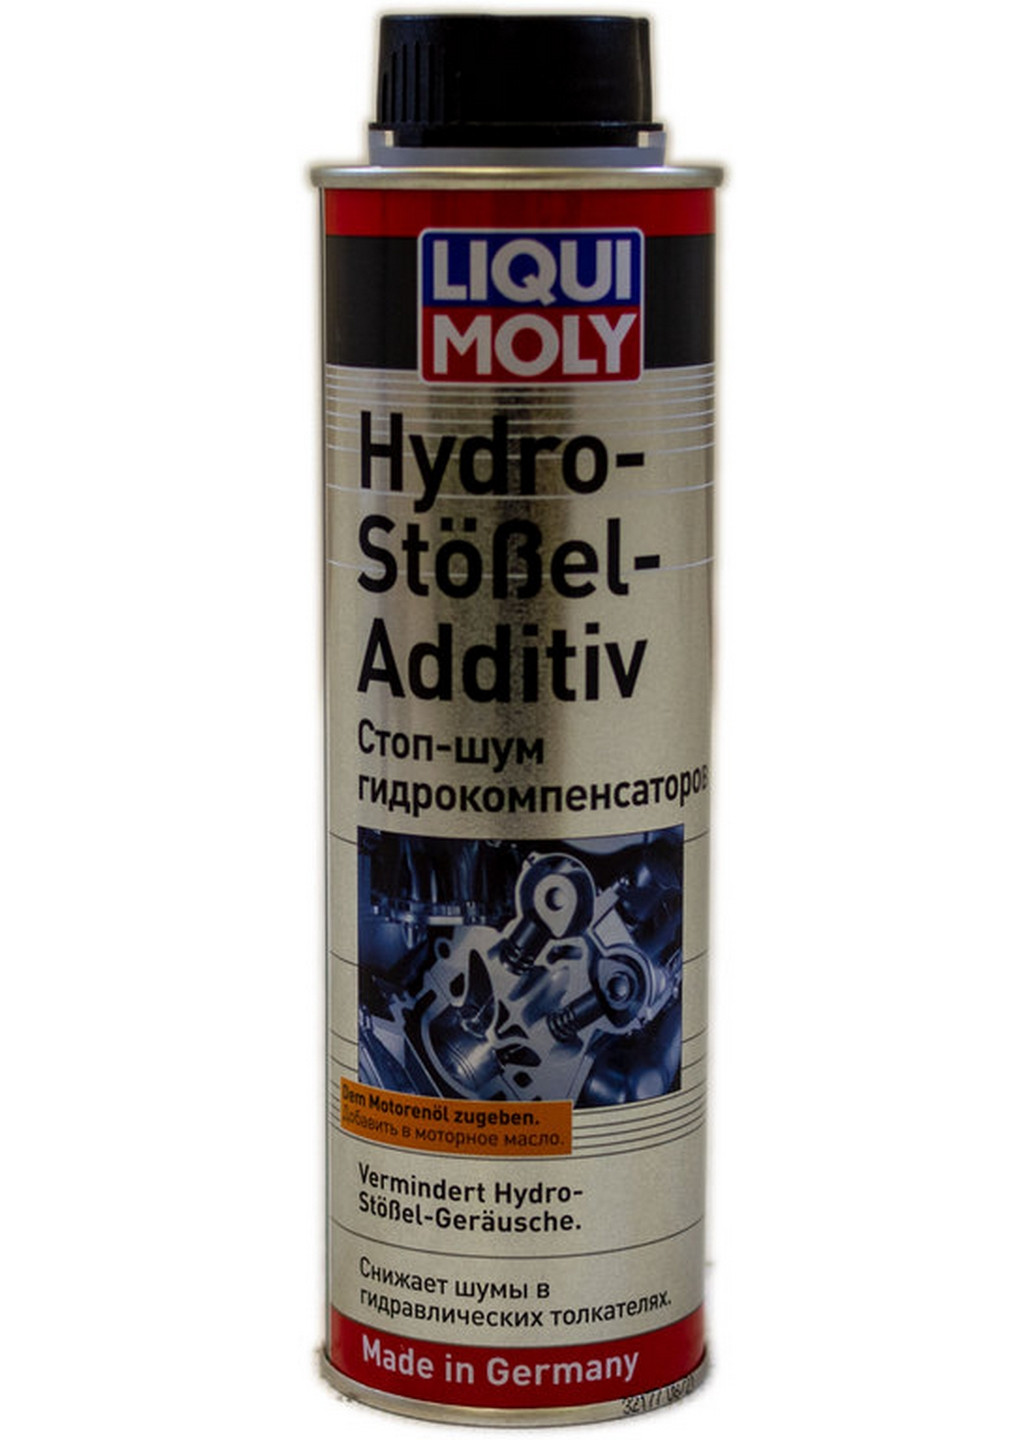 Присадка в моторное масло 300 мл Hudro-Stossel-Additiv (для устранения шума гидрокомпенсаторов) 6х18х5,5 см Liqui Moly (263425449)